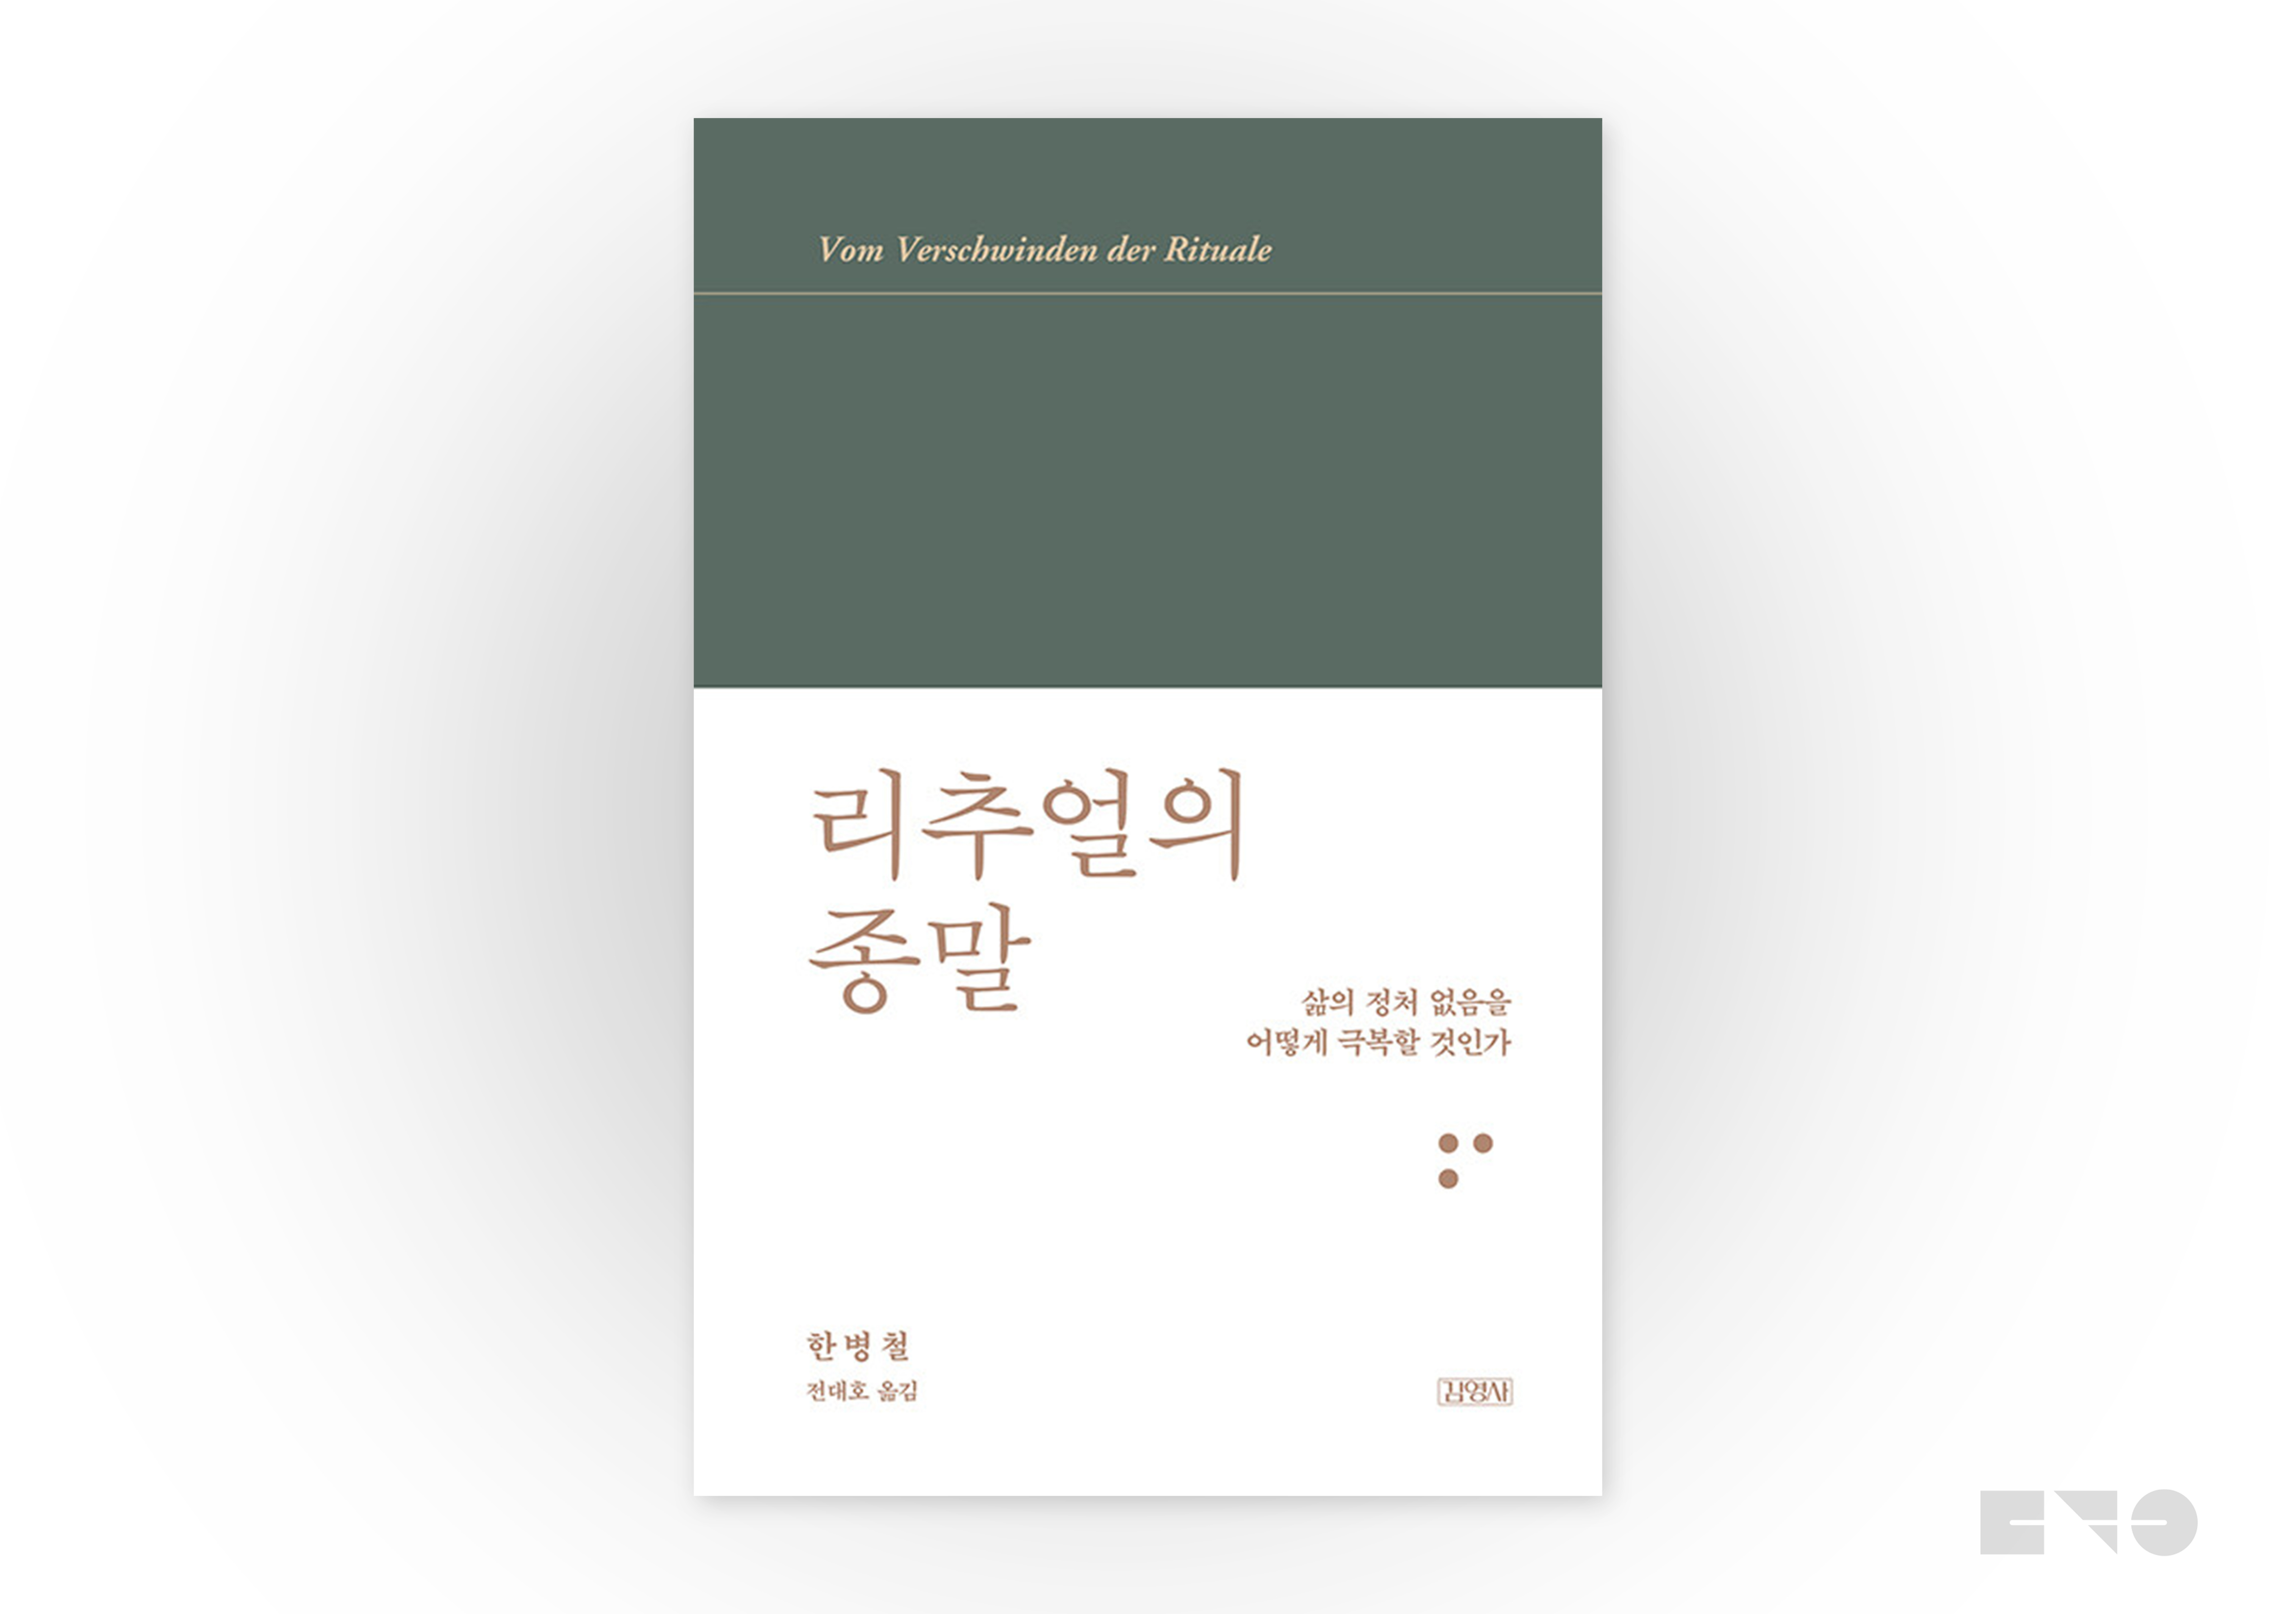 한병철, 『리추얼의 종말』(김영사, 2021)